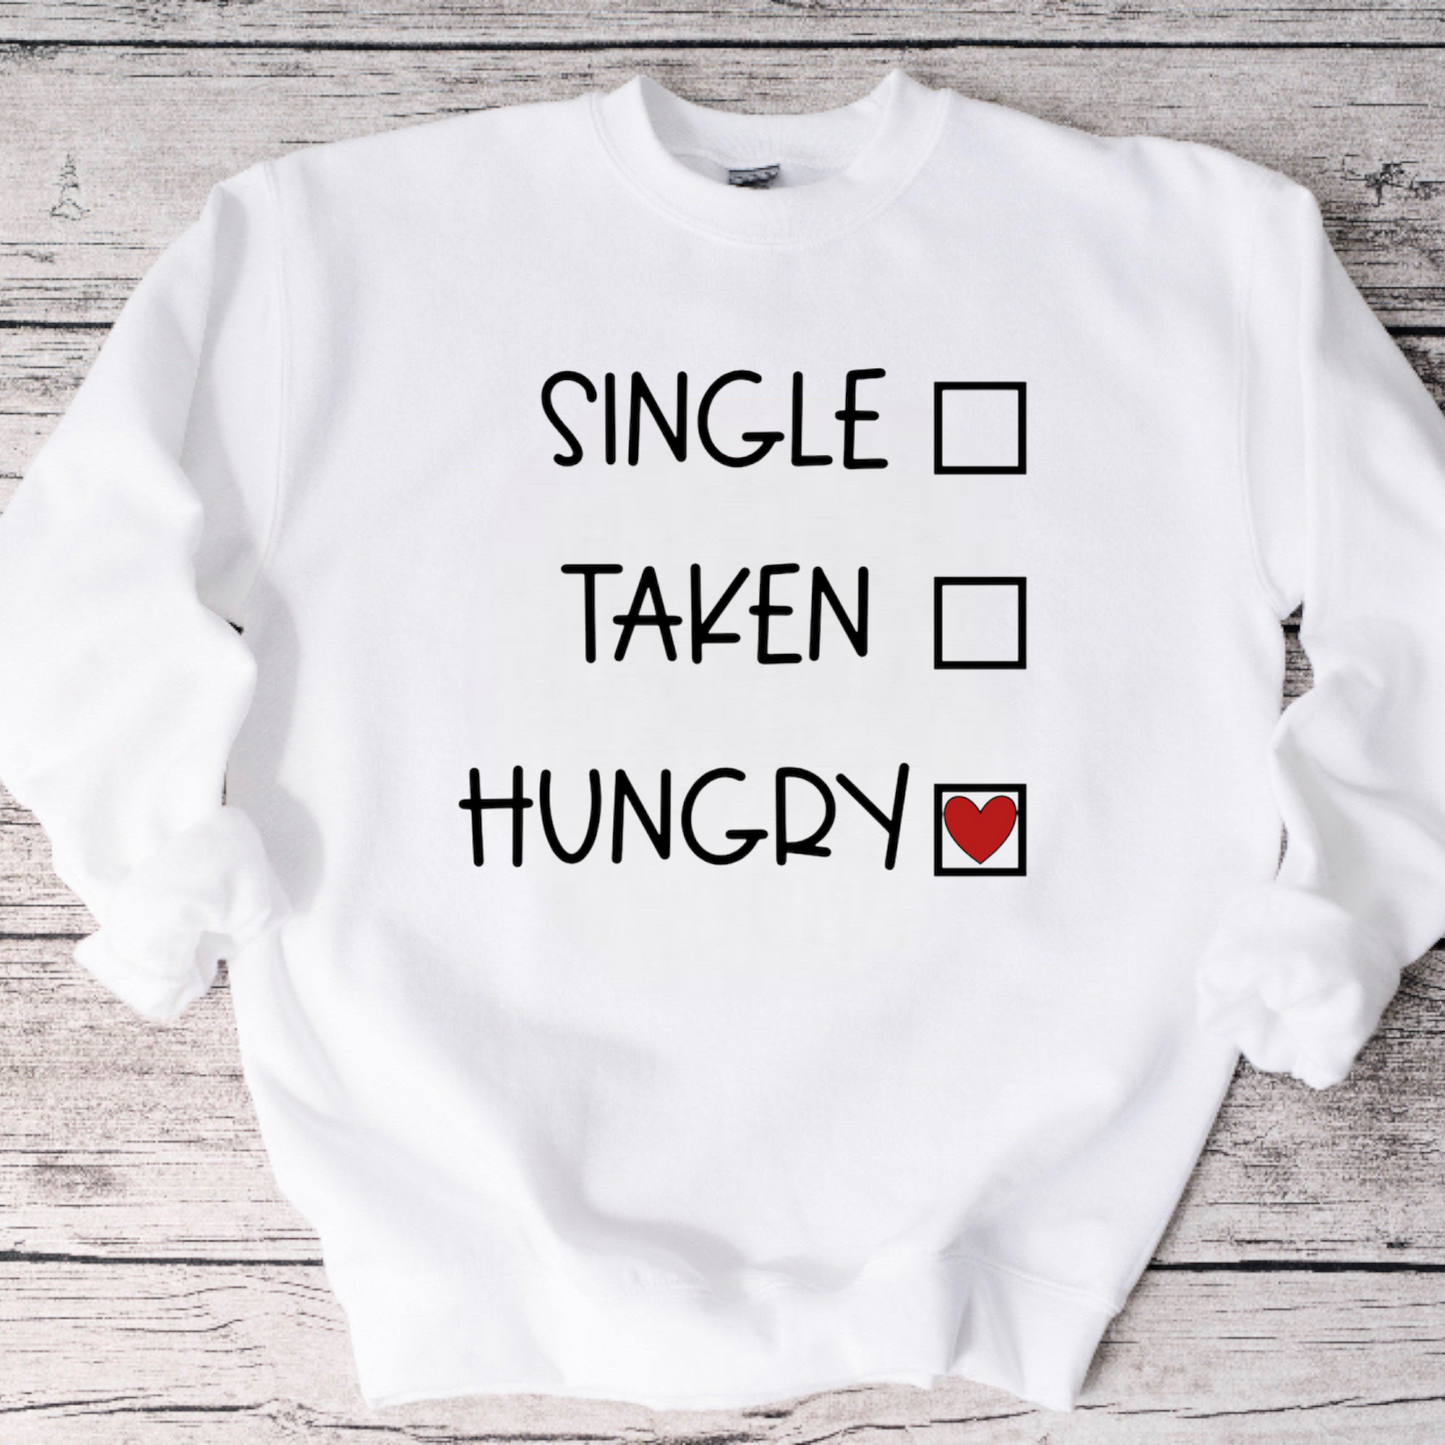 Single, Taken, Hungry Crewneck Sweatshirt or Tee